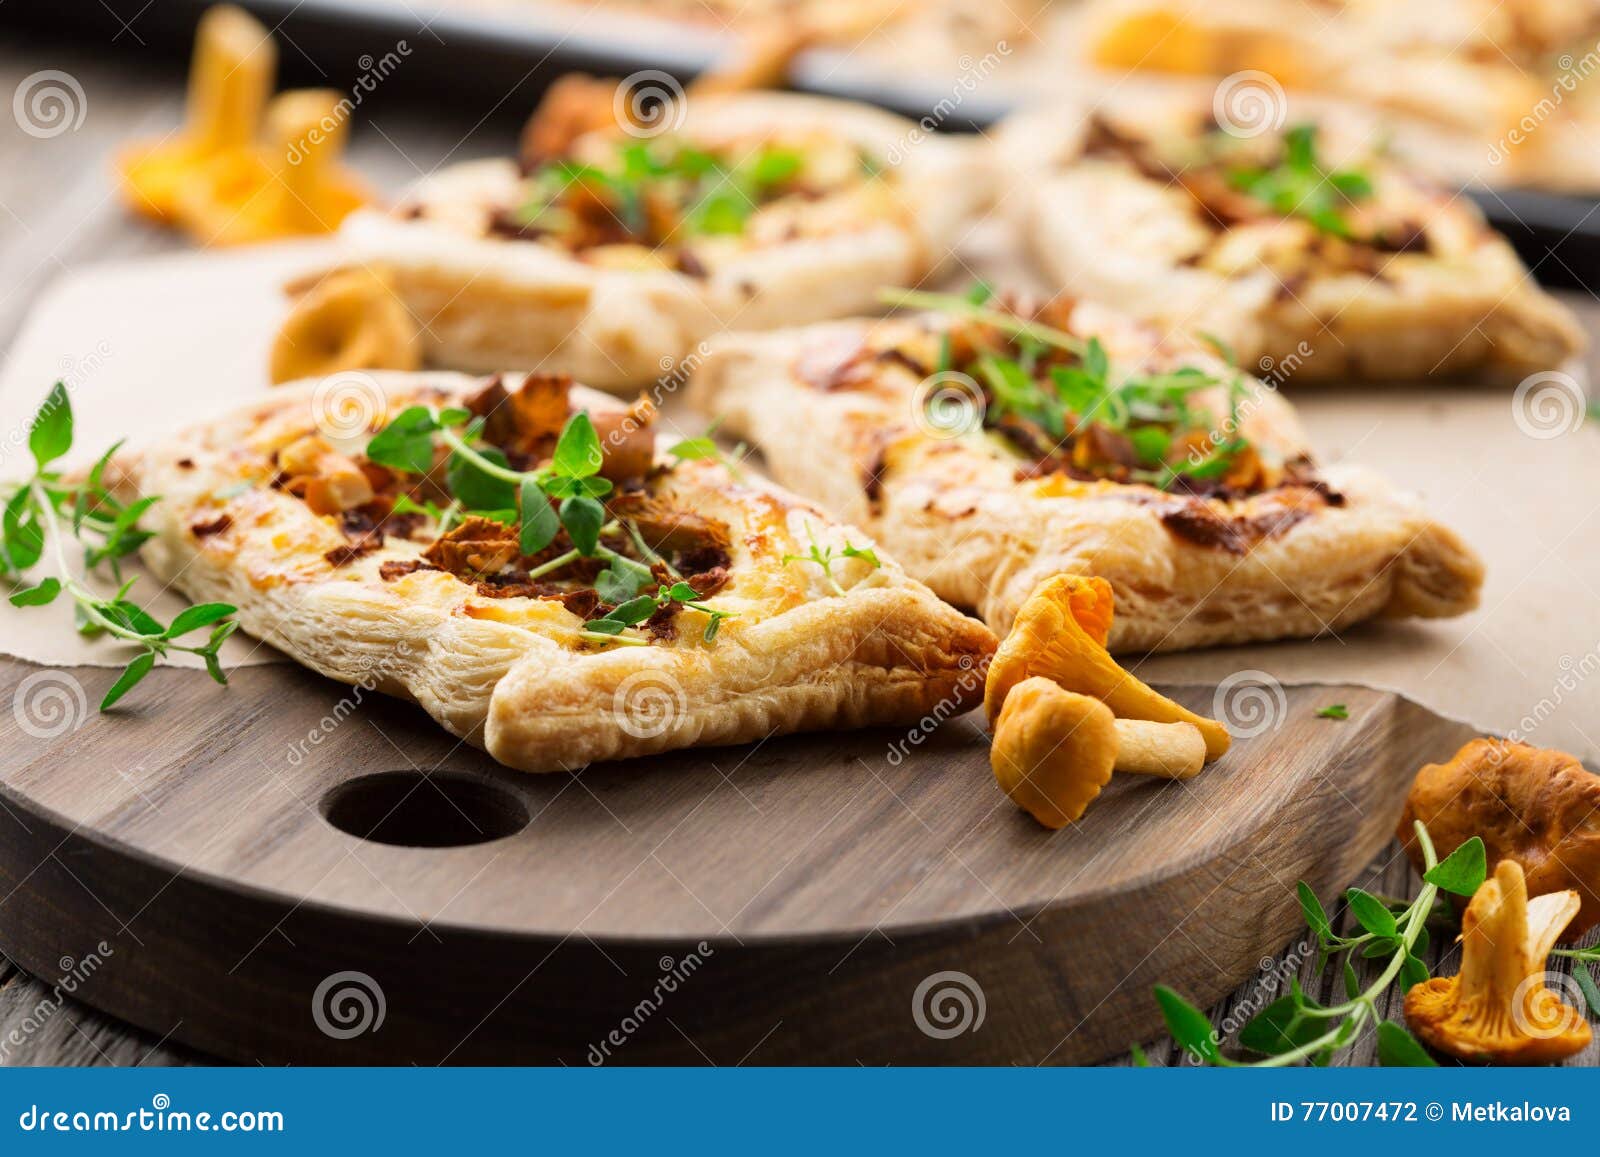 пицца с лисичками рецепт на слоеном тесте фото 3